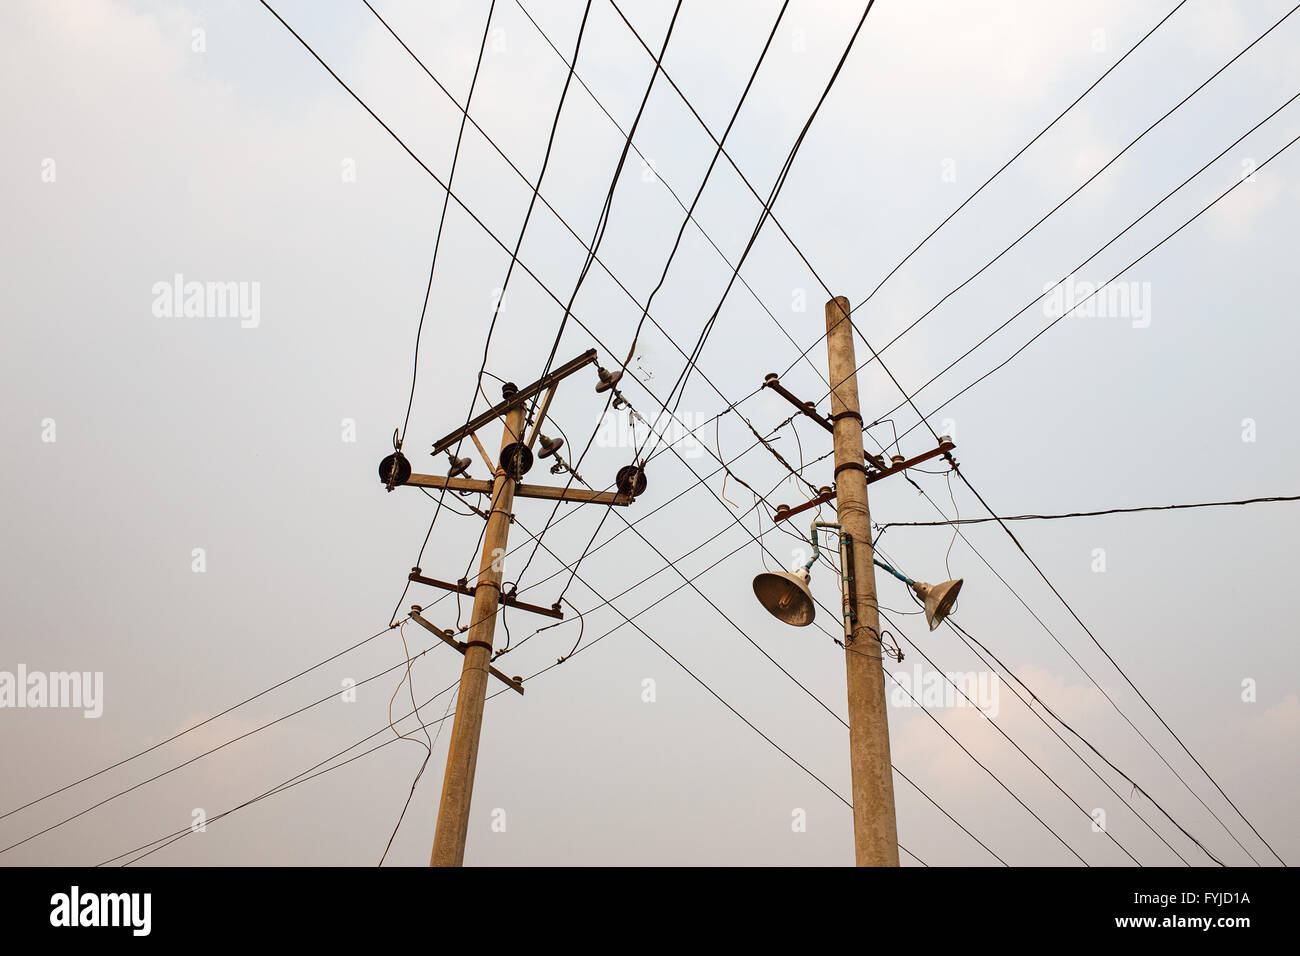 Electricity powerlines in Lashio, Myanmar. Stock Photo